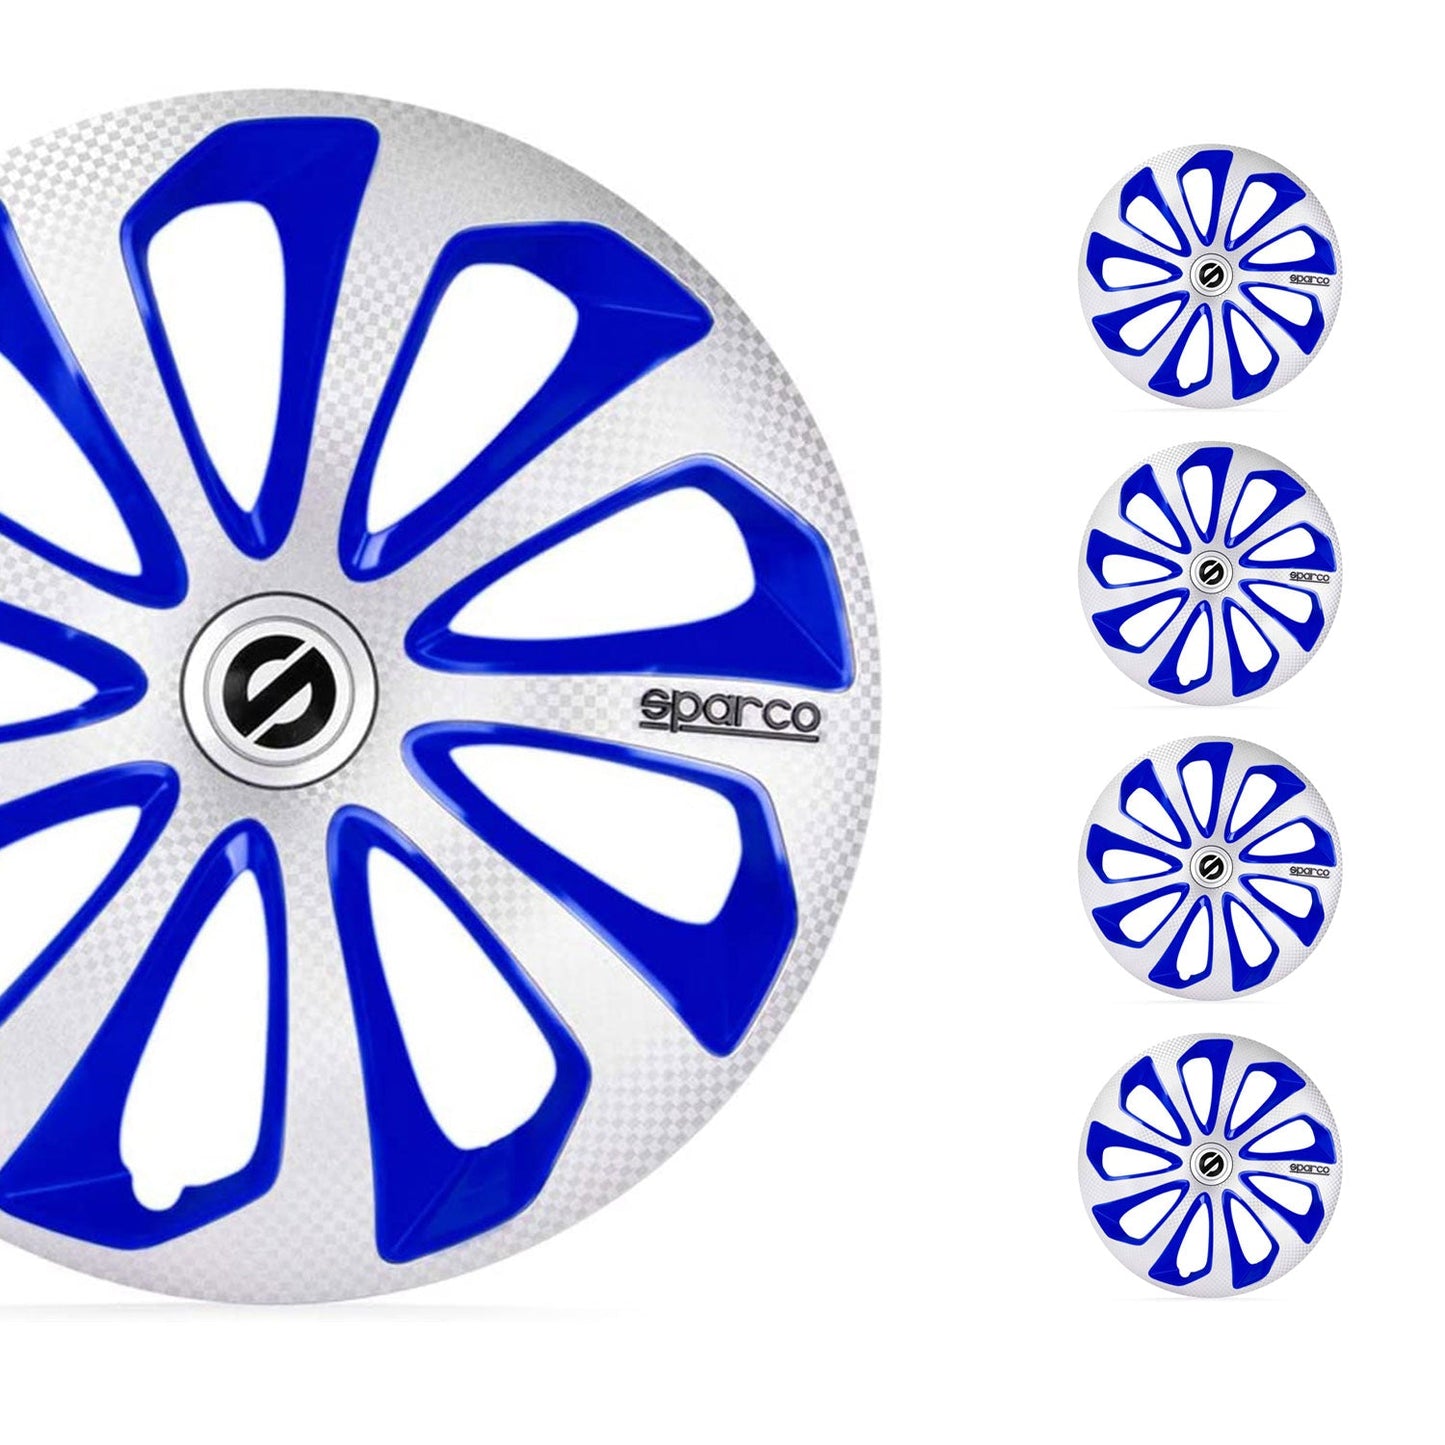 OMAC 15" Sparco Sicilia Wheel Covers Hubcaps Silver Blue Carbon 4 Pcs 96SPC1575SVBLC